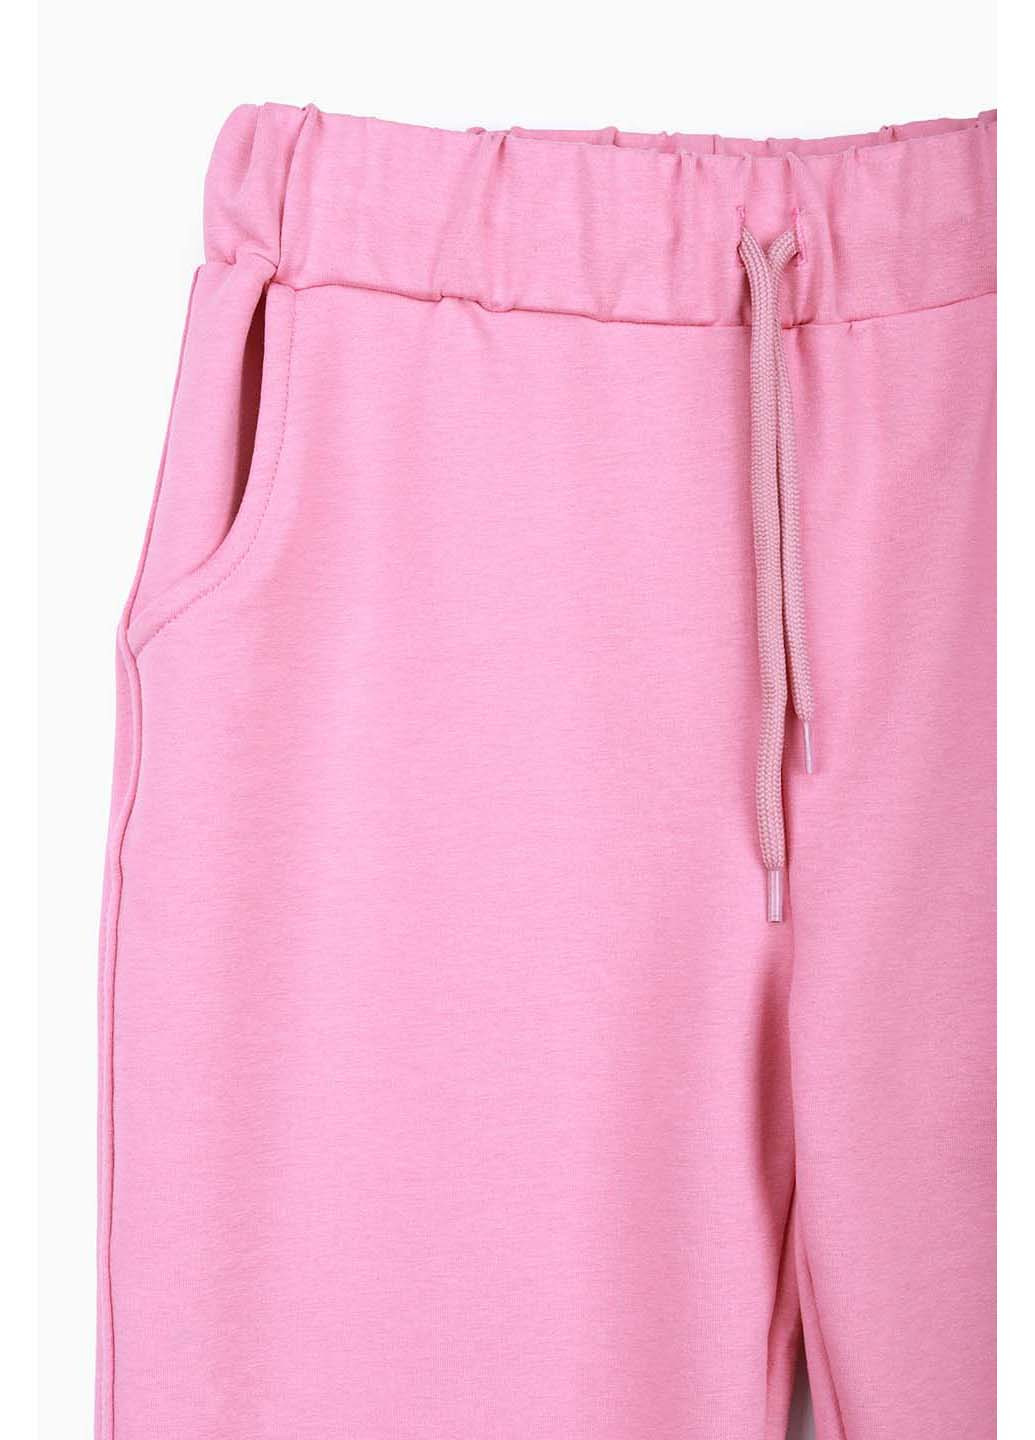 Розовые спортивные демисезонные брюки Safari